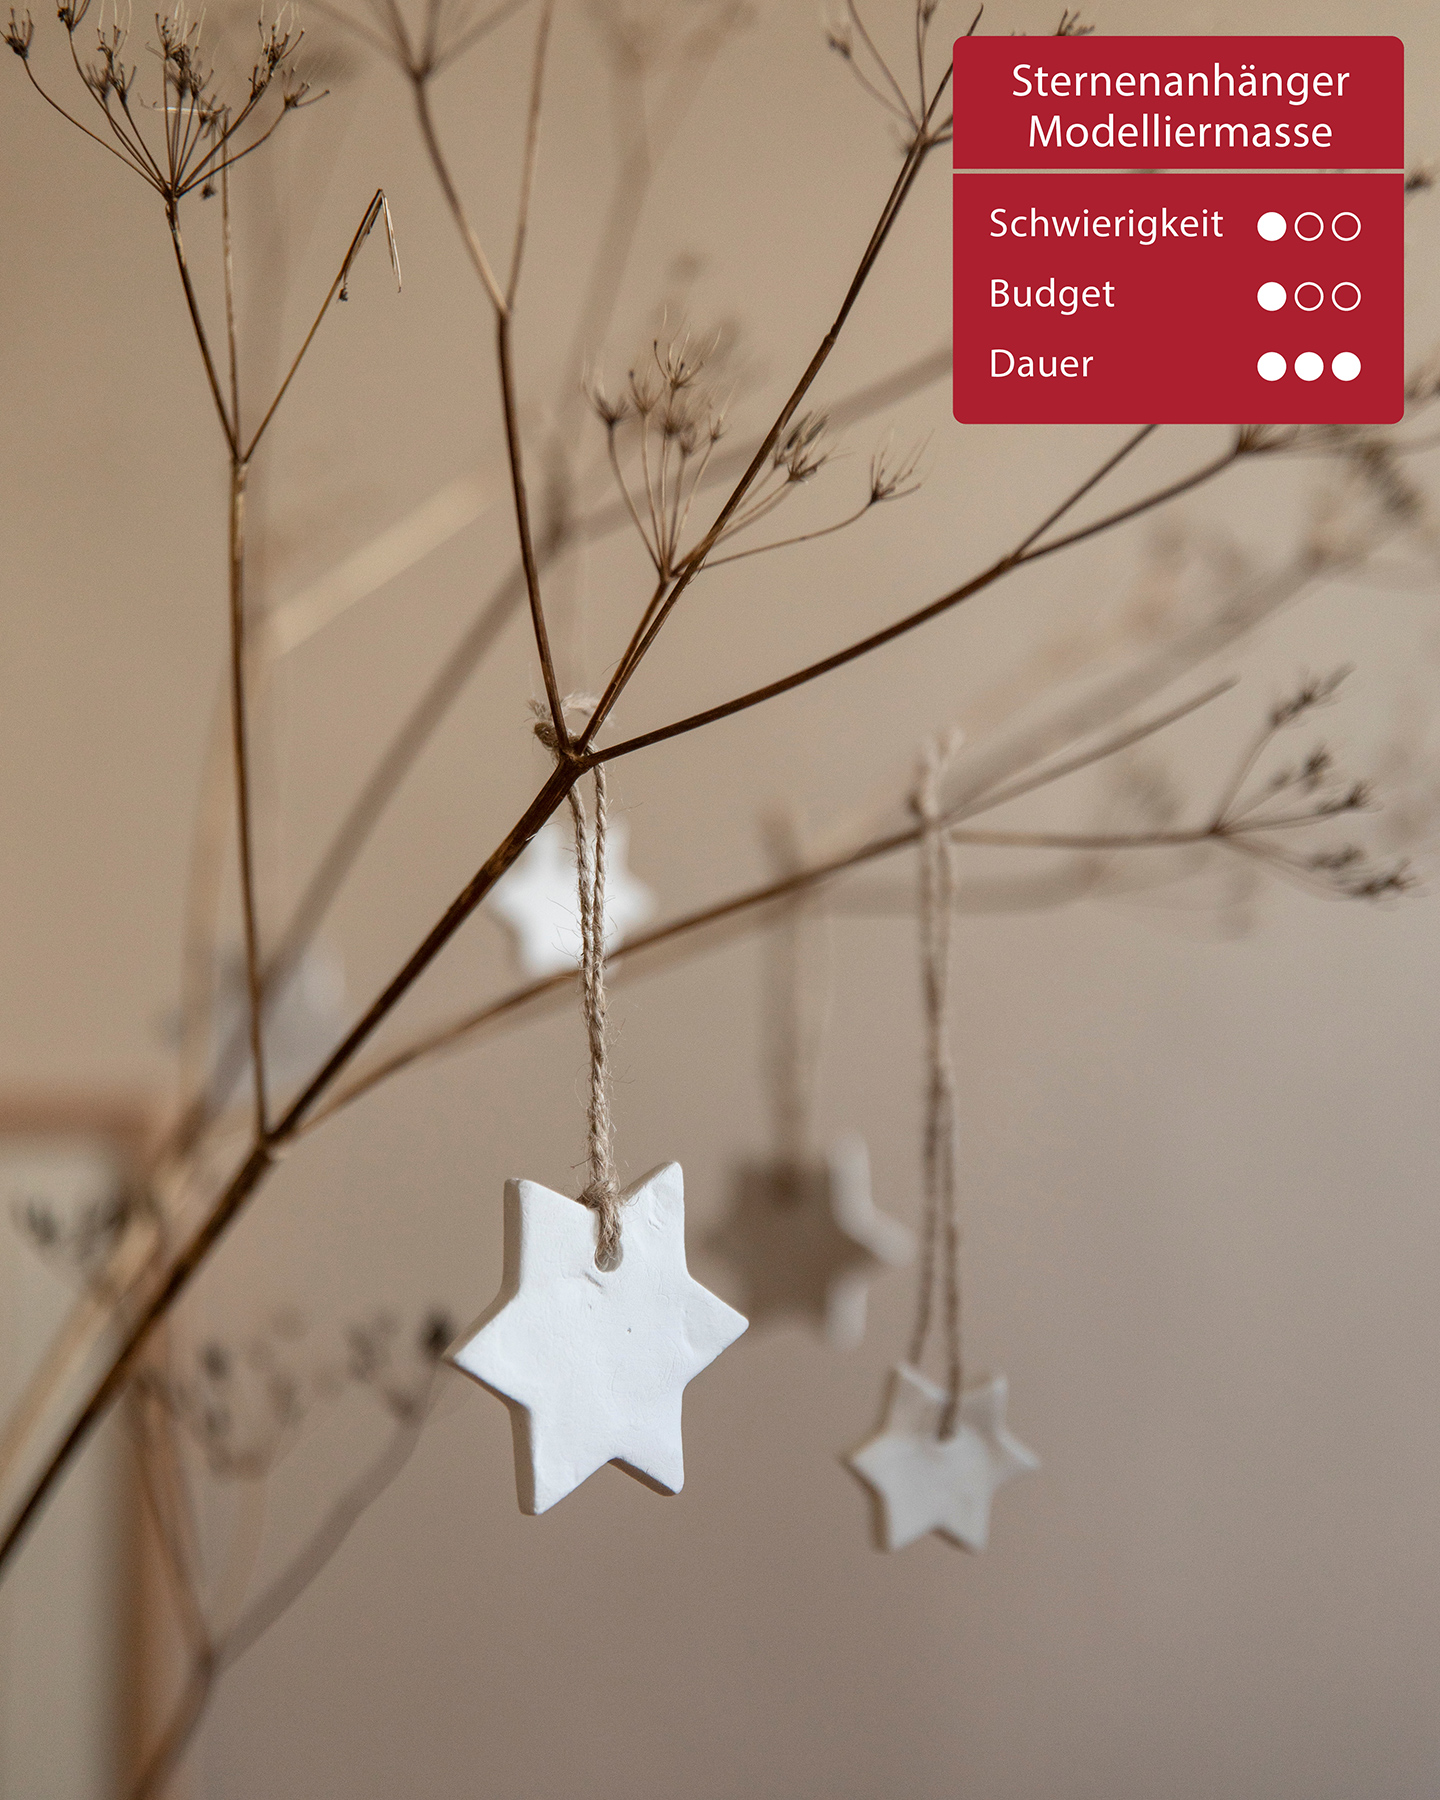 Aus Modelliermasse gebastelte Sterne Hängen als Weihnachtsdeko an Zweigen.